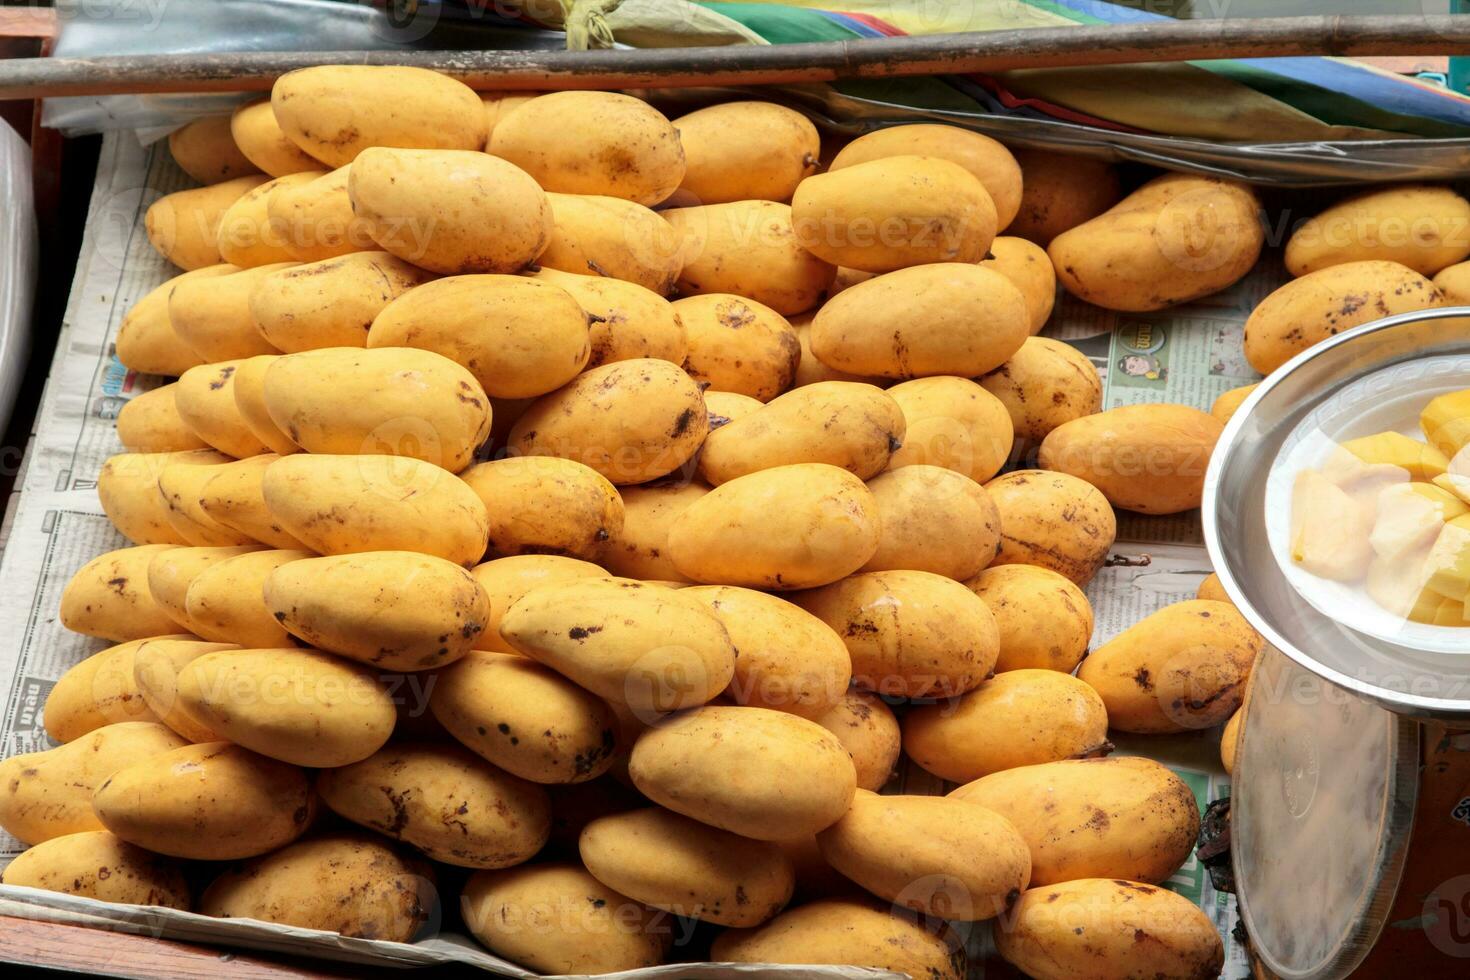 boten verkoop fruit - rijp mango - in damnoen saduak drijvend markt is een populair toerist bestemming dat Europeanen en Chinese Leuk vinden naar reizen met de traditioneel manier van leven van de dorpelingen. foto